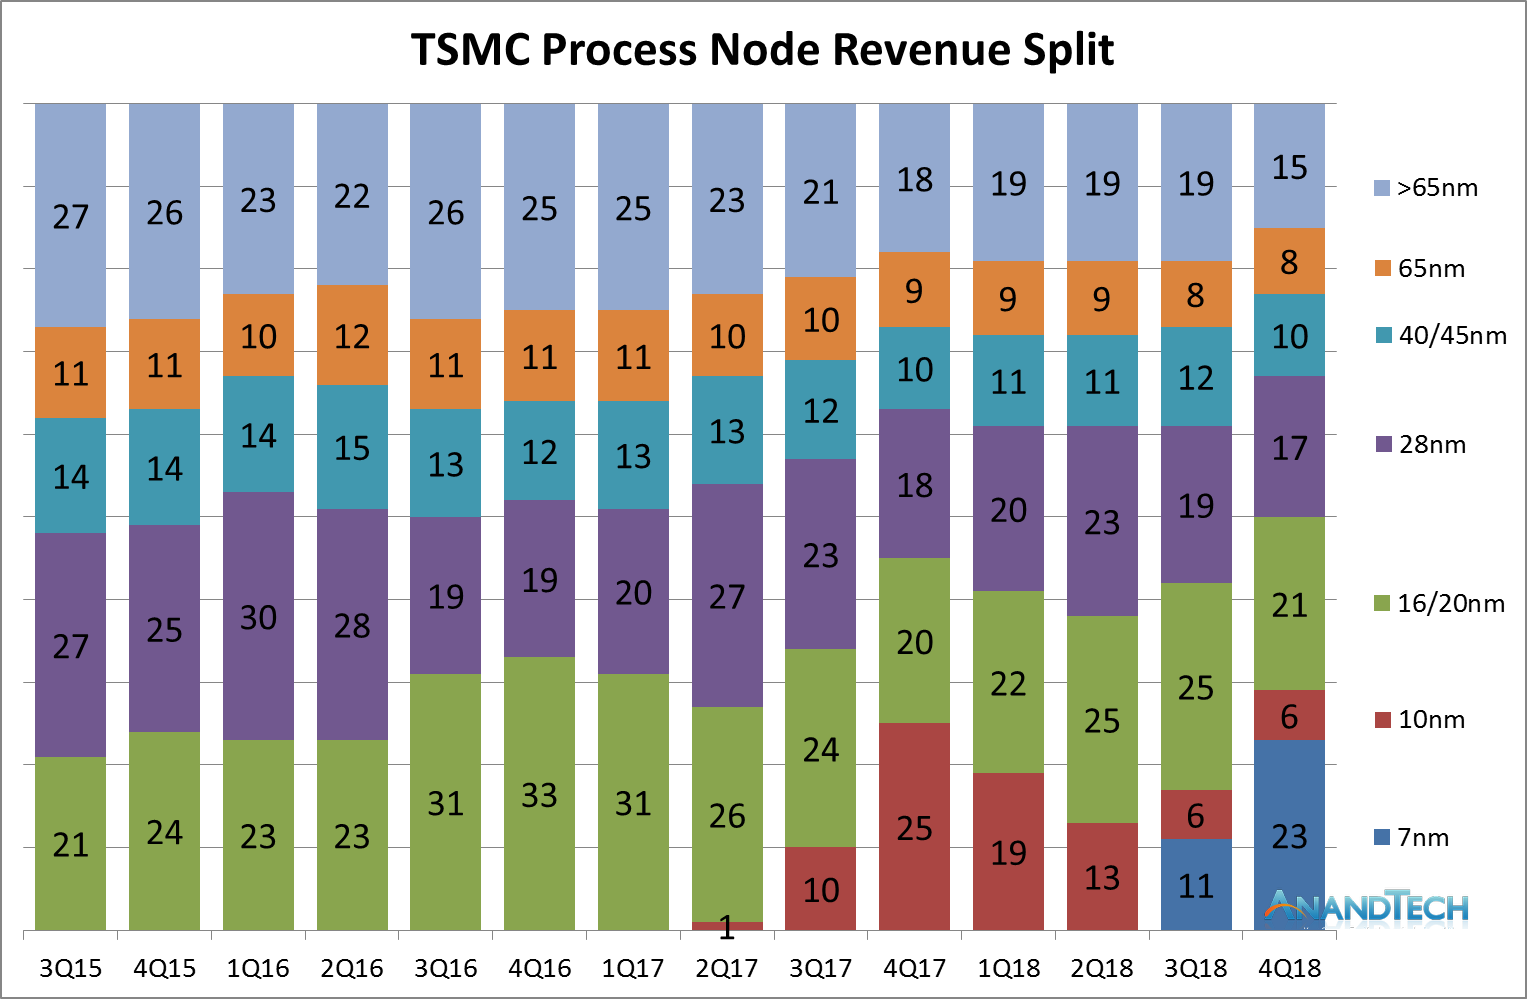 TSMC: 7nm Now Biggest Share of Revenue